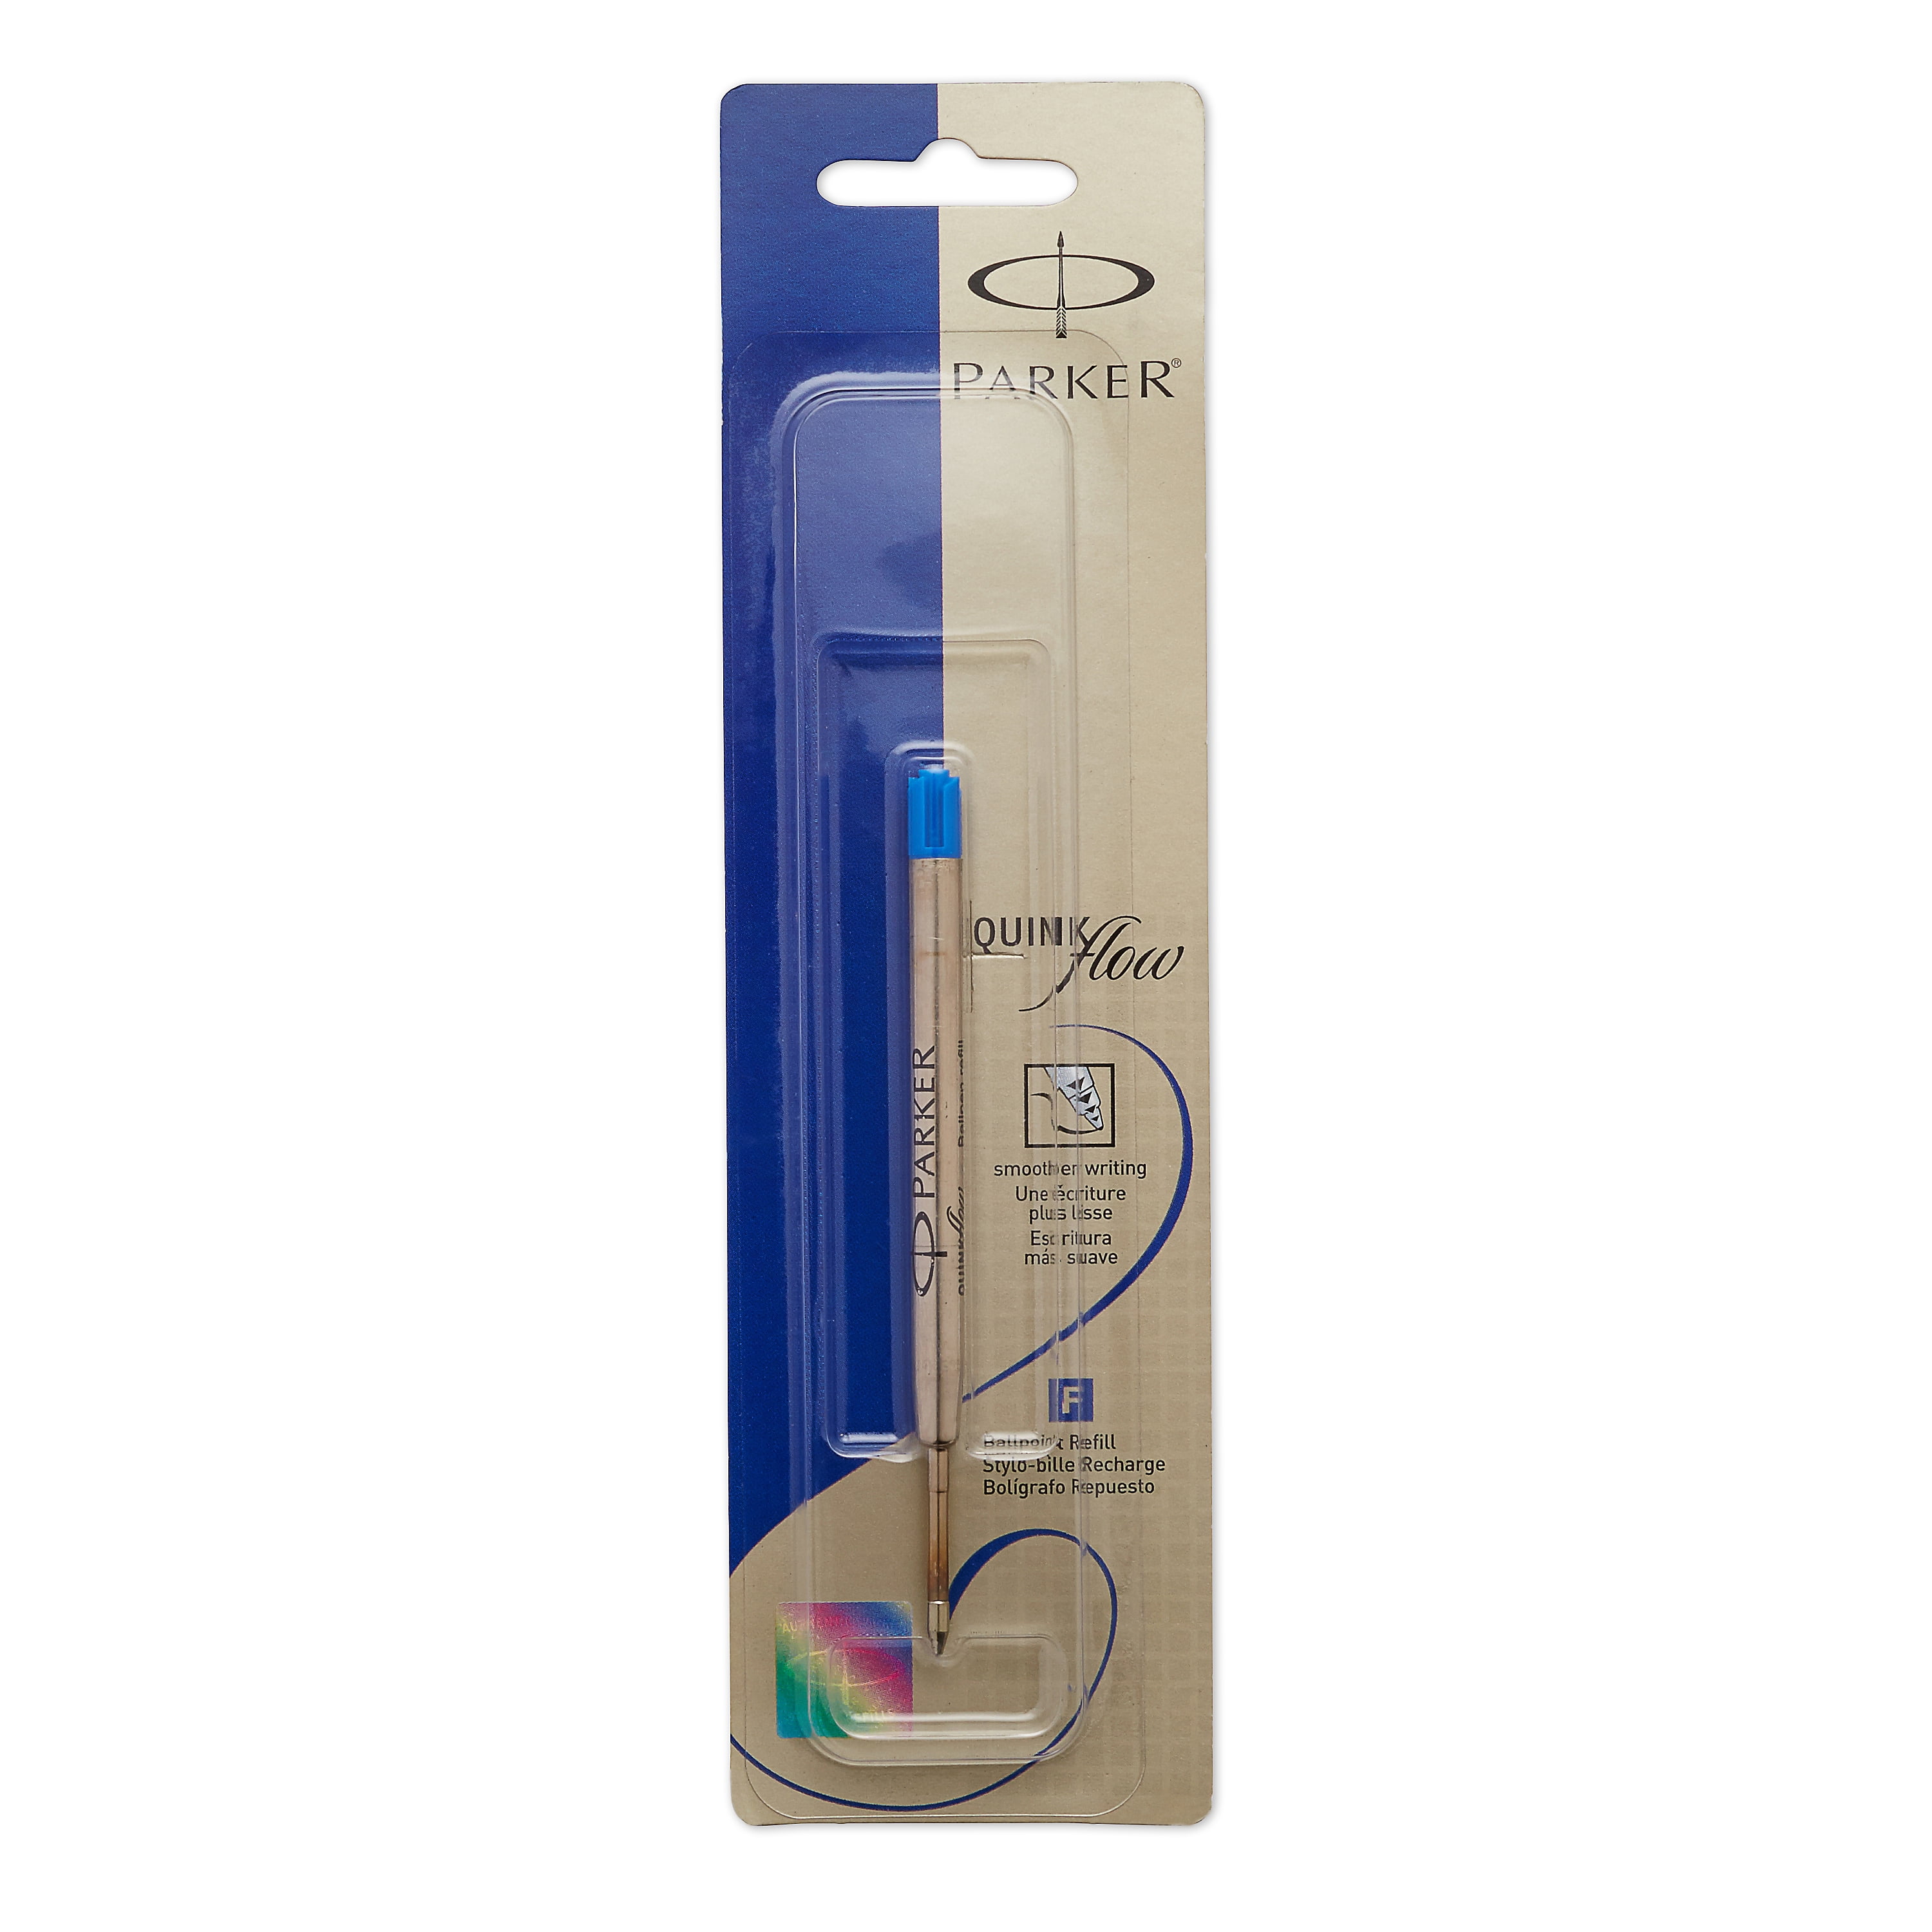 PARKER QUINKflow Ballpoint Pen Ink Refill, Medium Tip, Blue, 1 Count